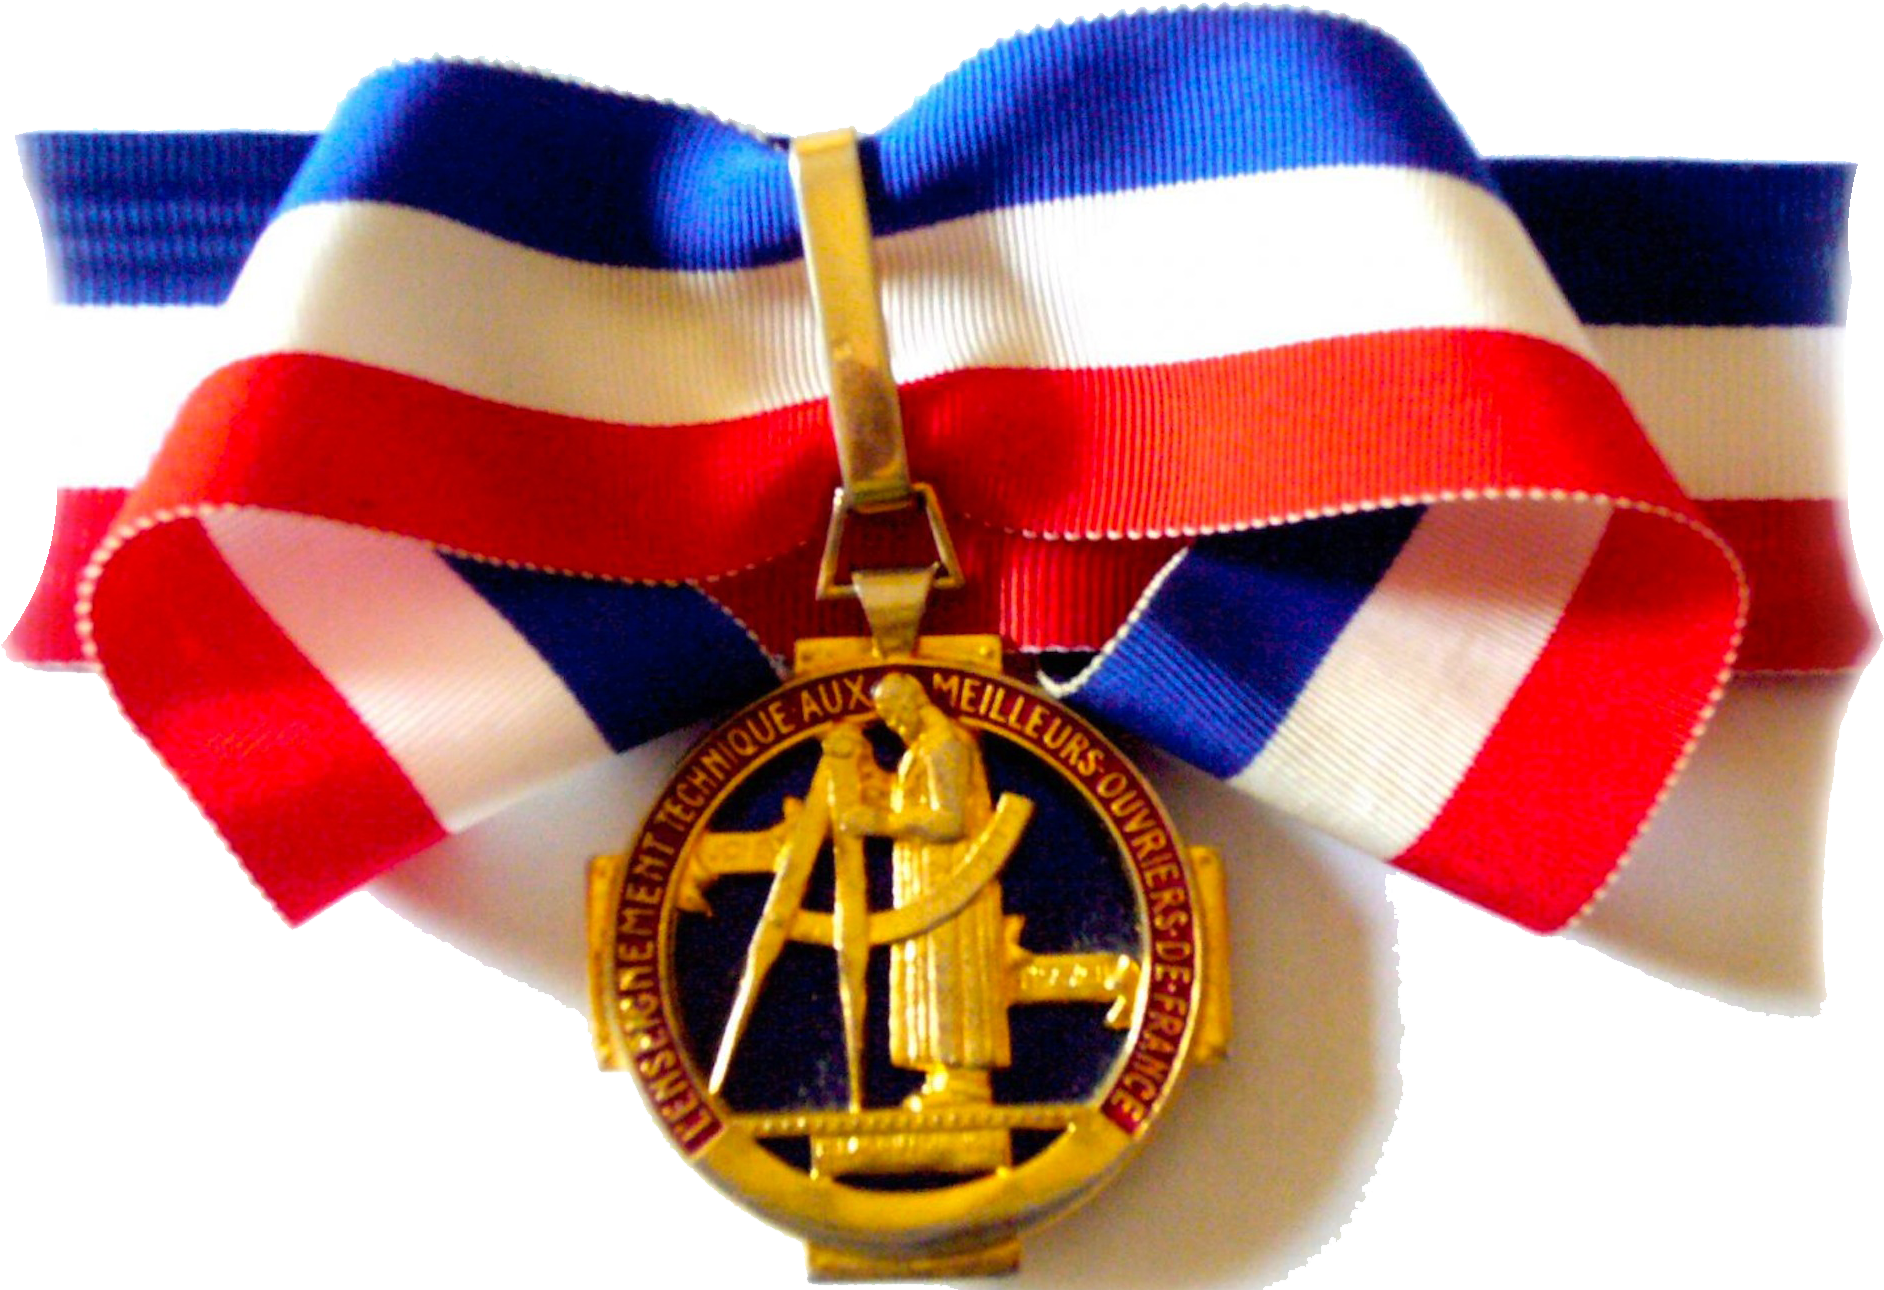  Médaille Meilleur Ouvrier de France